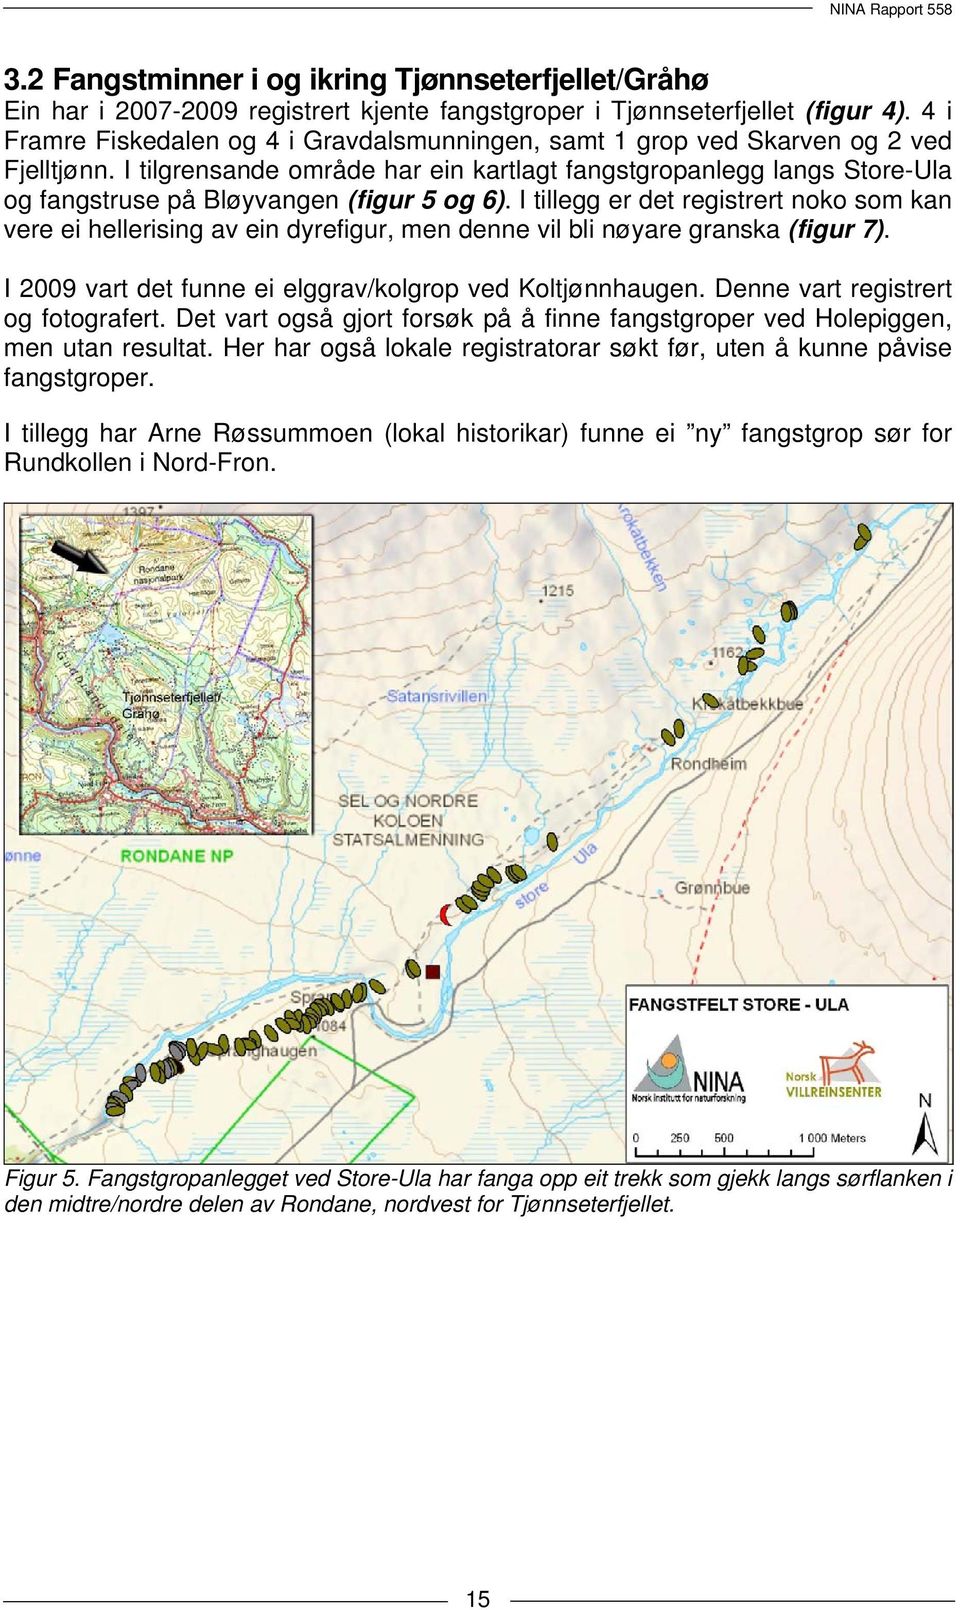 I tilgrensande område har ein kartlagt fangstgropanlegg langs Store-Ula og fangstruse på Bløyvangen (figur 5 og 6).